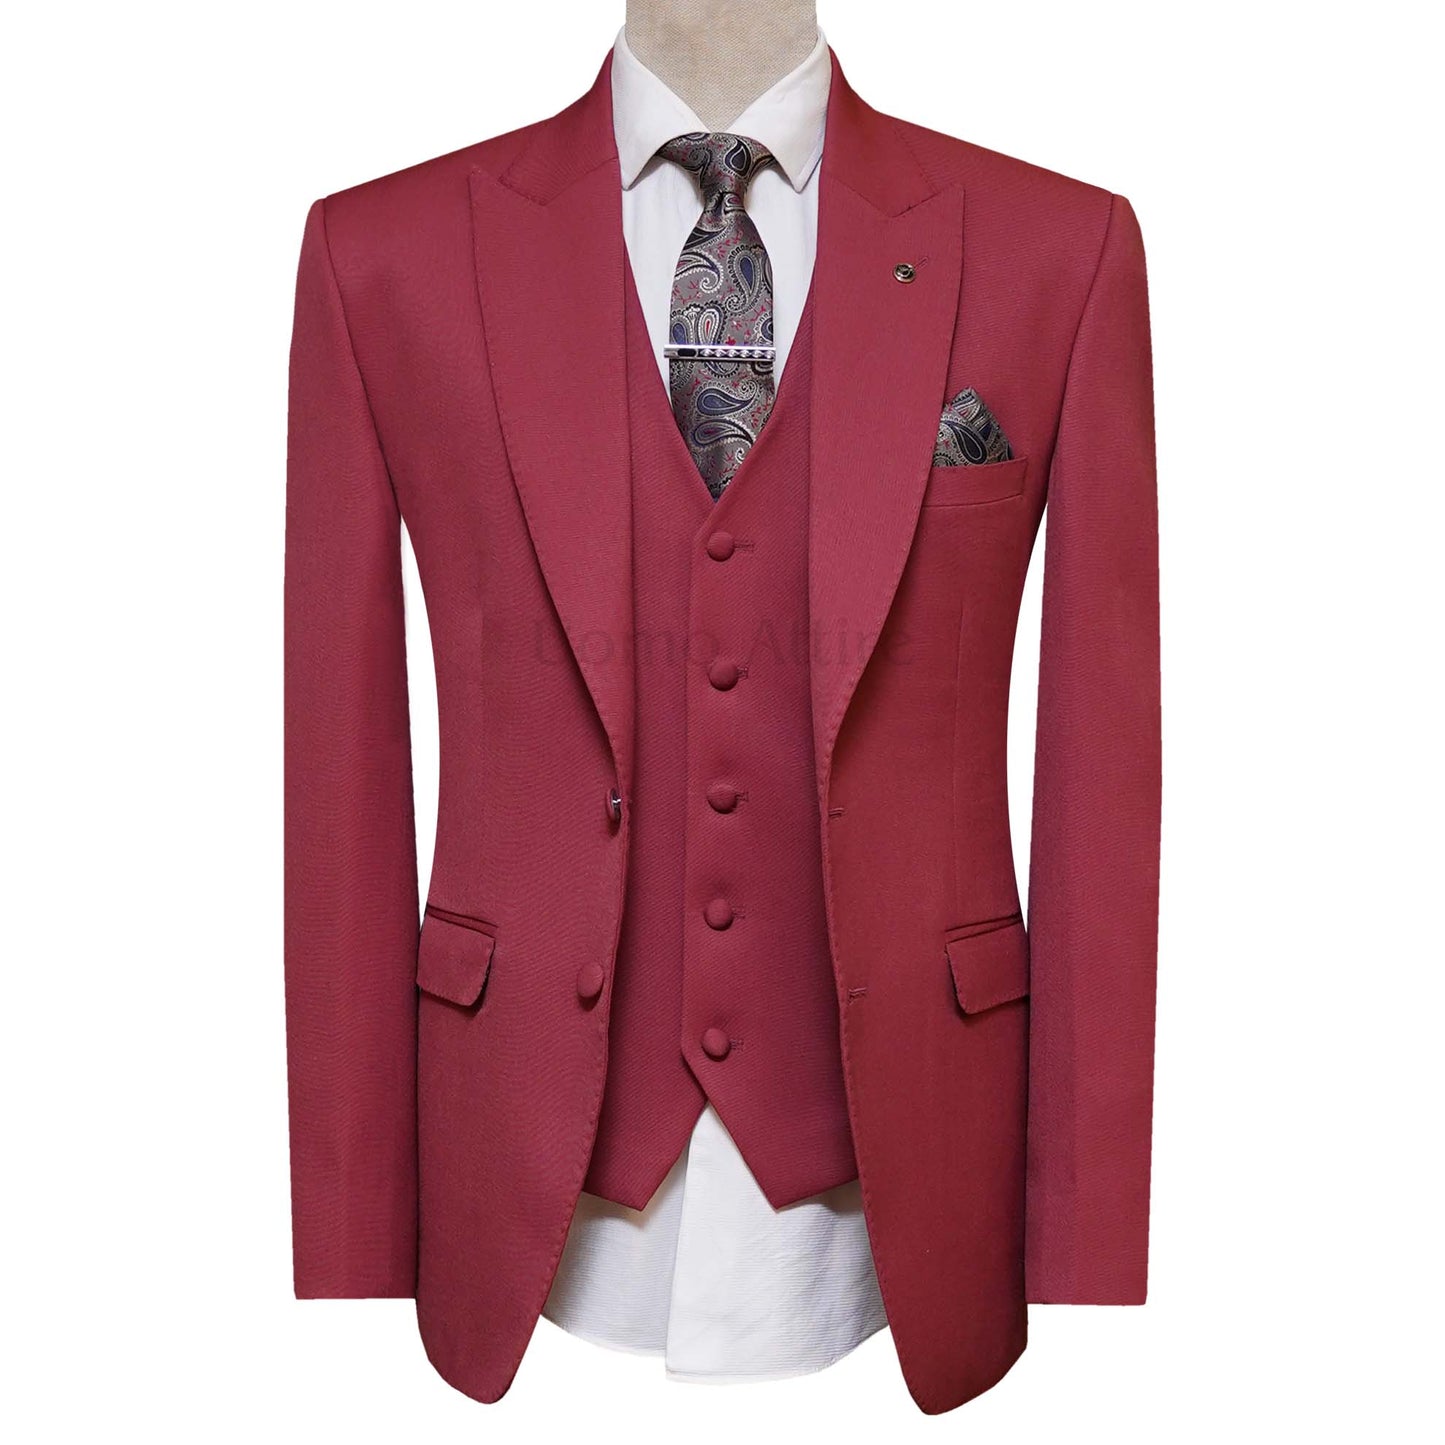 Bespoke Wine Red Men's Wedding Suit For Groom | 3 Piece Suit